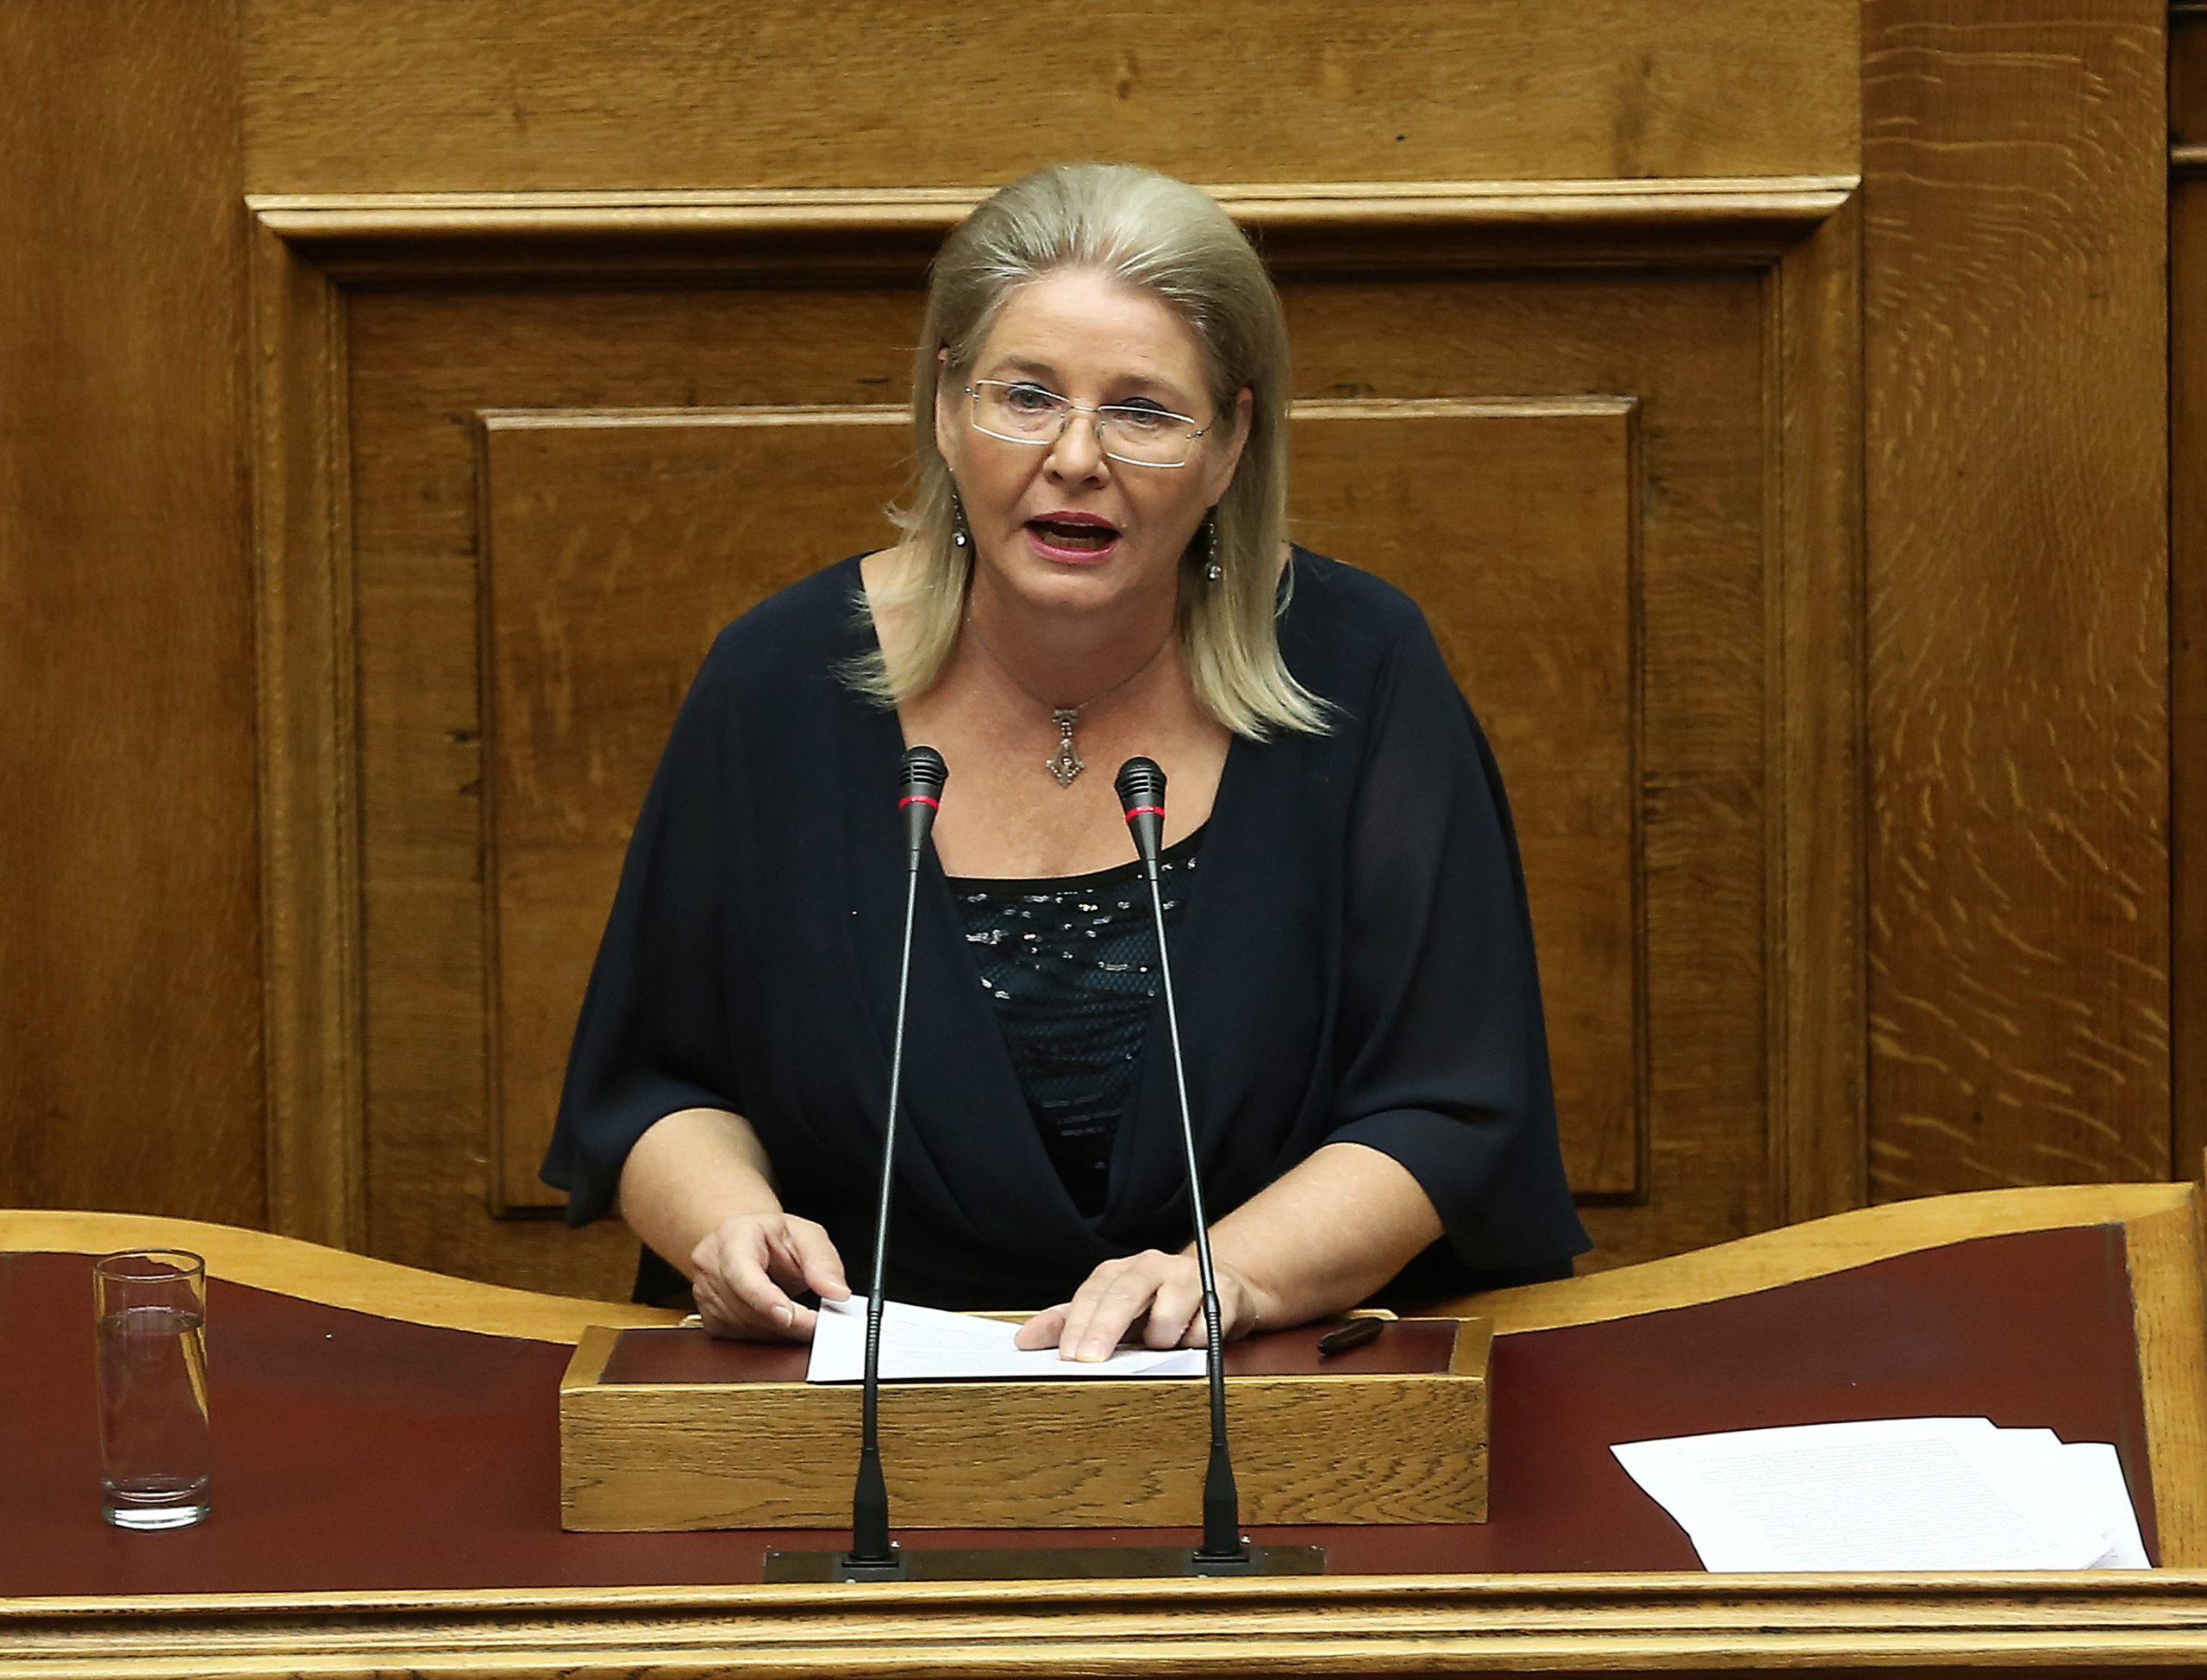 Δίωξη στην Ελένη Ζαρούλια για διορισμό στη Βουλή με ψευδή στοιχεία